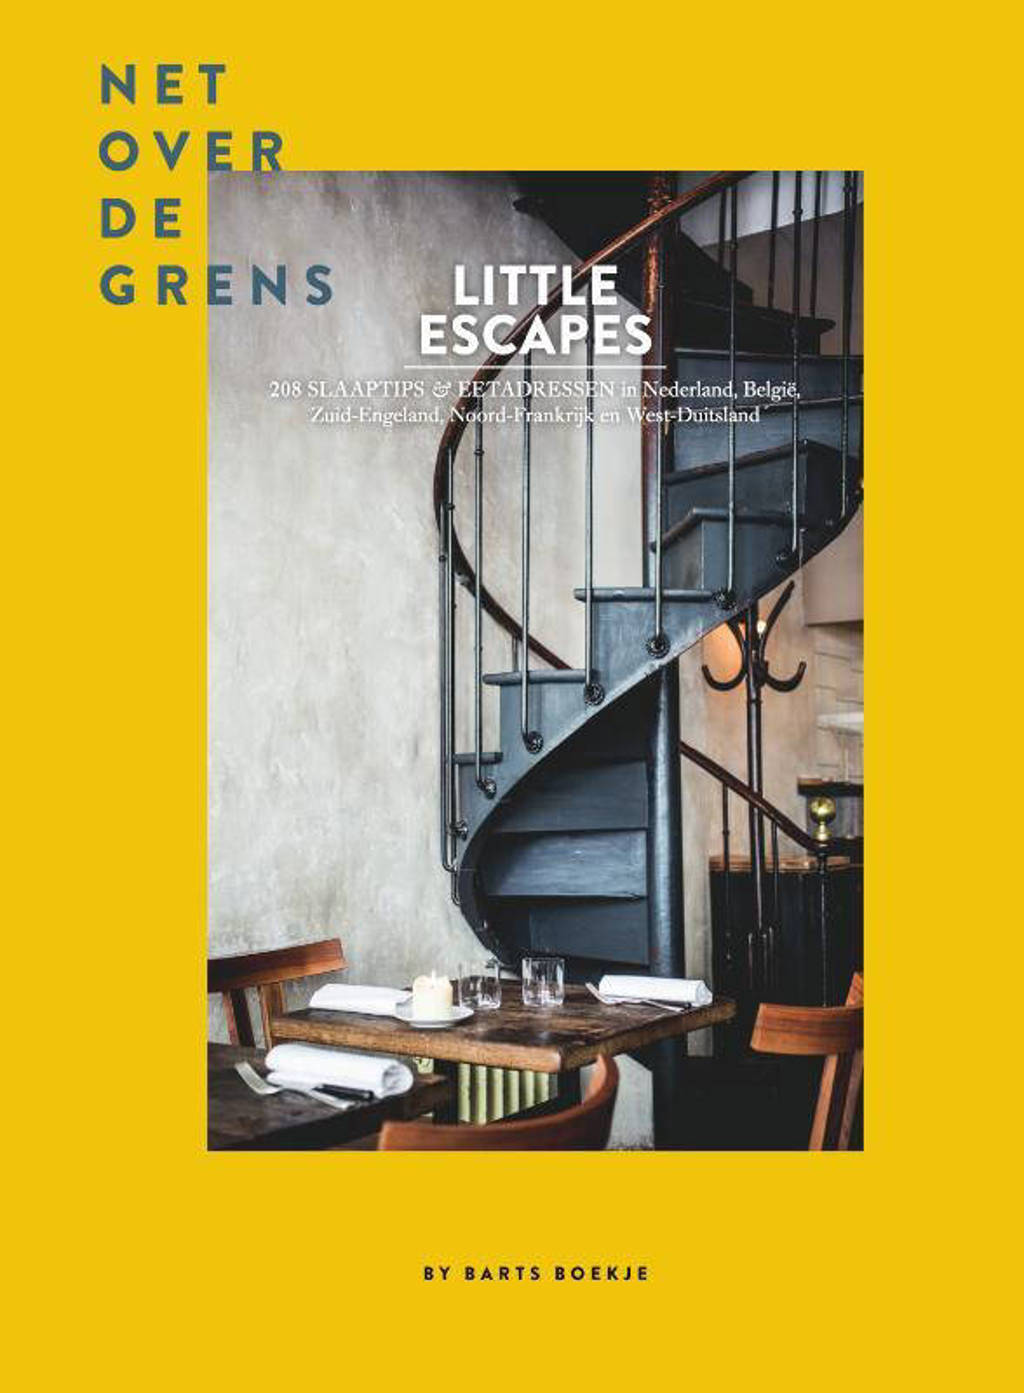 Little Escapes: Little Escapes net over de grens - Maartje Diepstraten en Barts Boekje